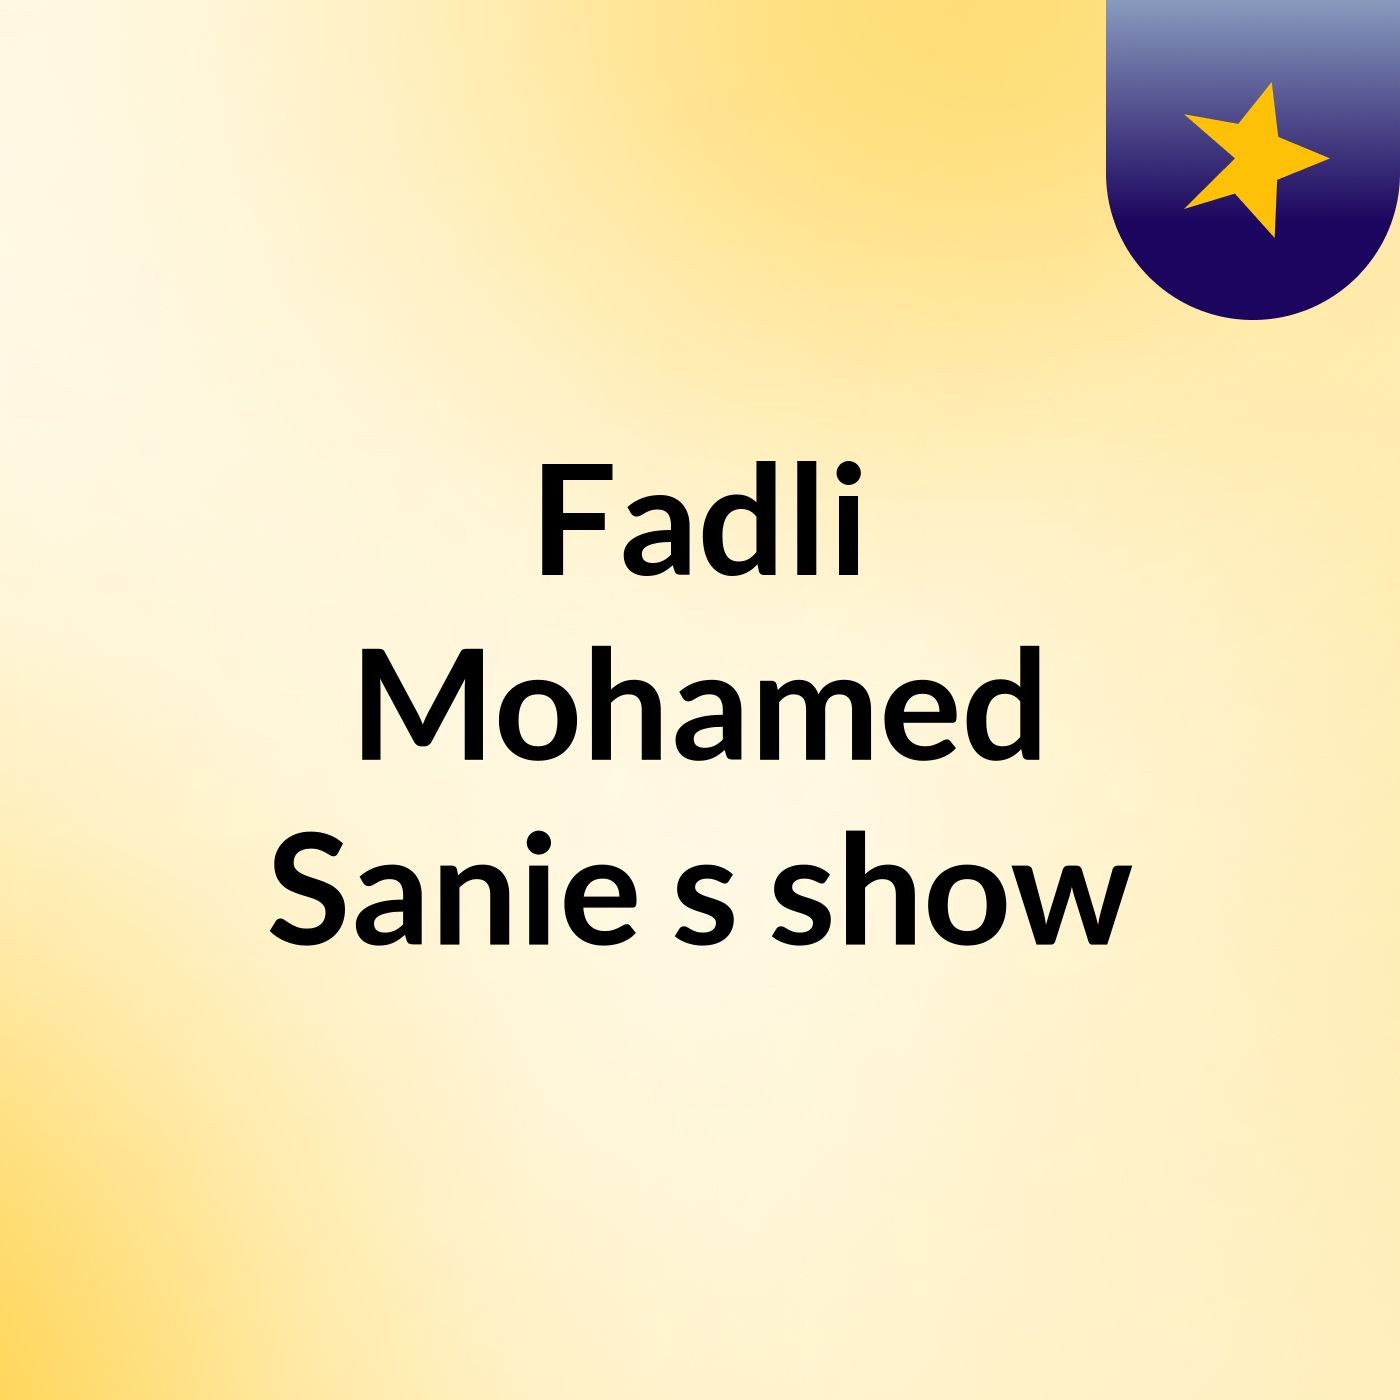 Episode 2 - Fadli Mohamed Sanie's show